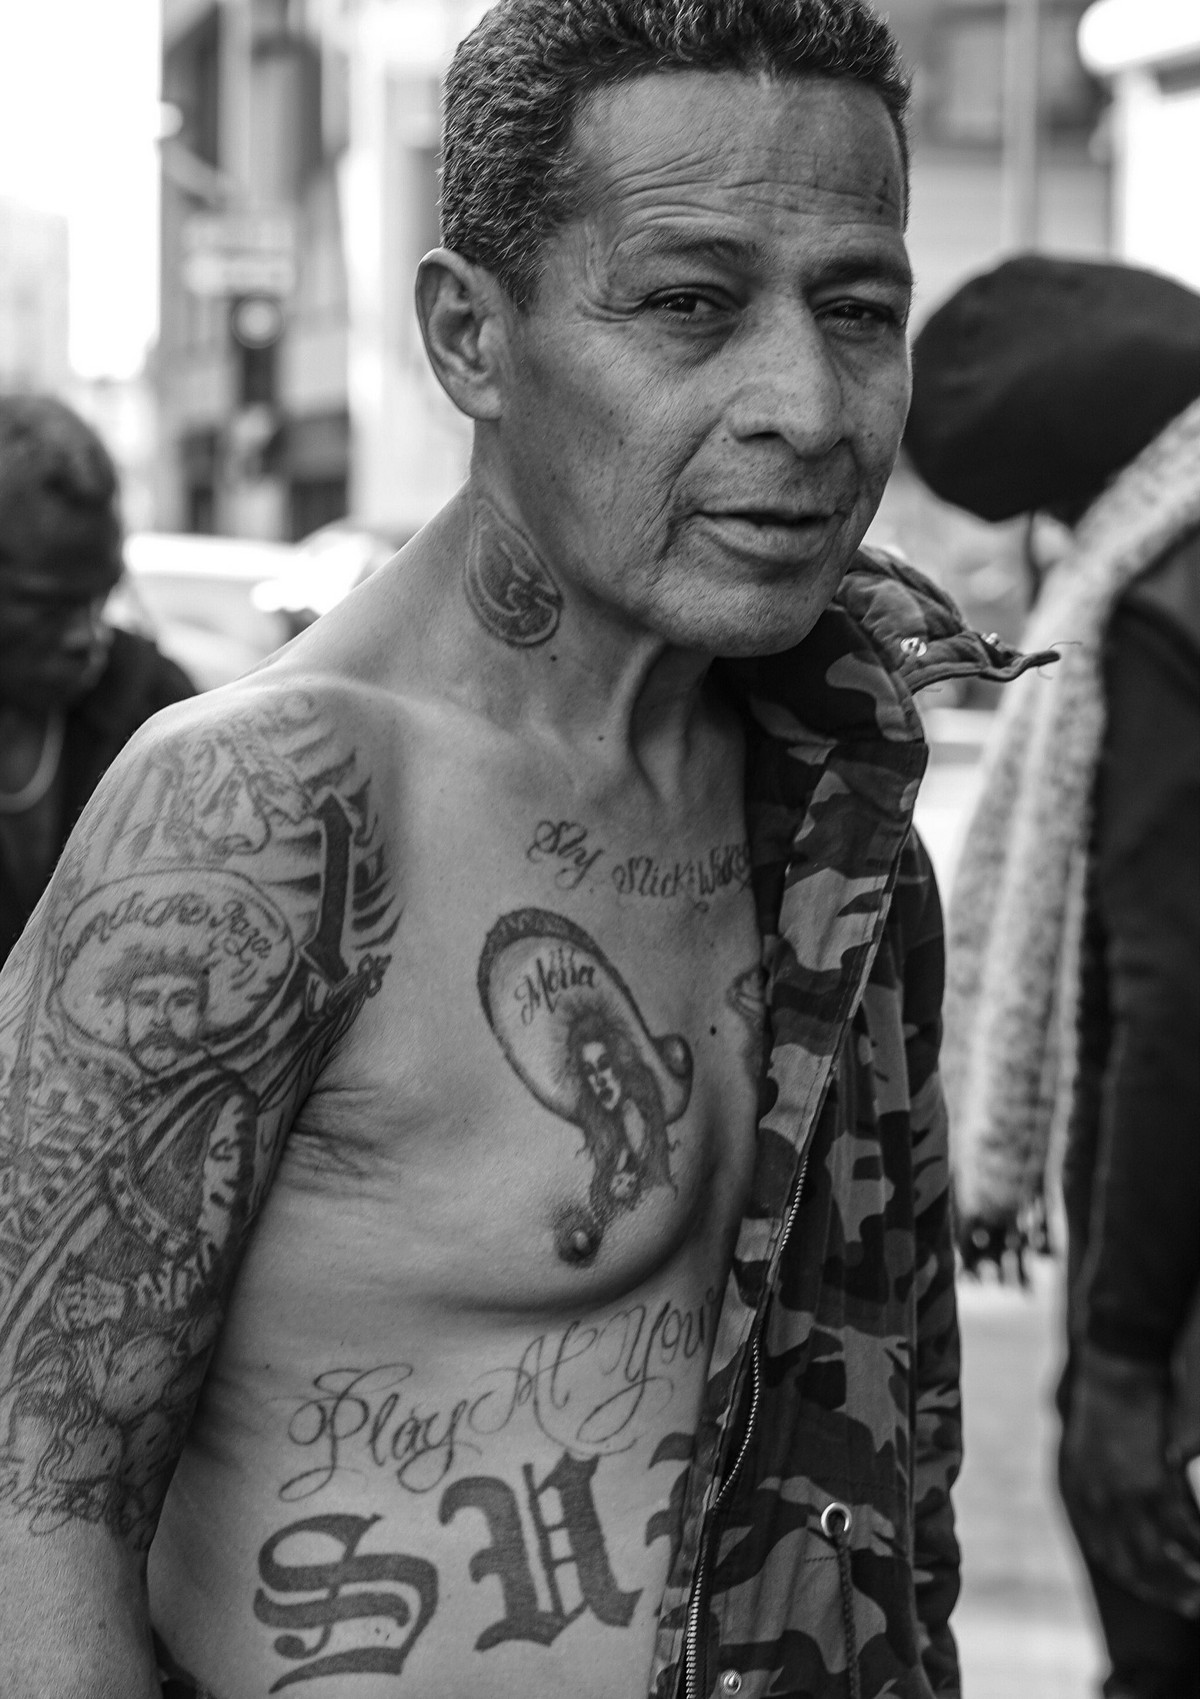 Фотограф десять лет документировал жизнь бездомных в Лос-Анджелесе